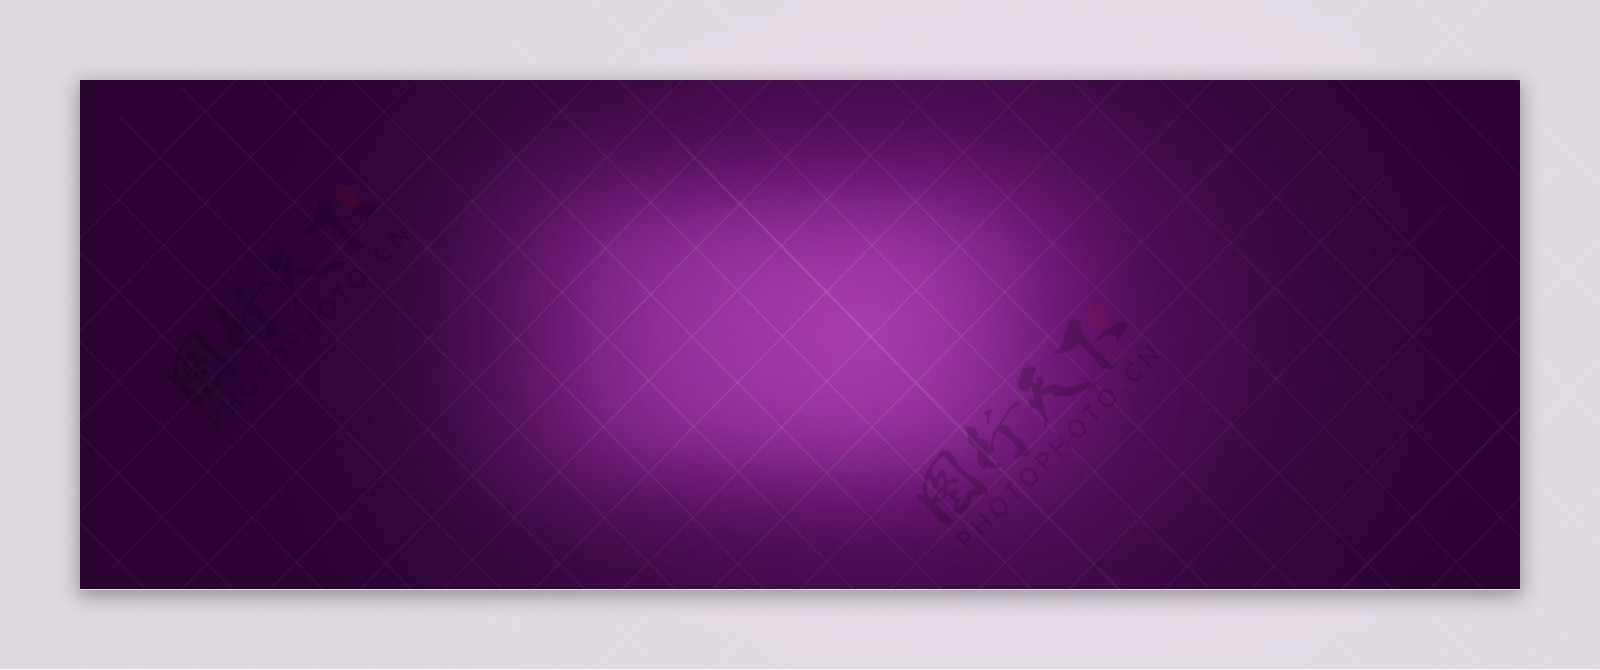 紫色菱形舞台背景banner